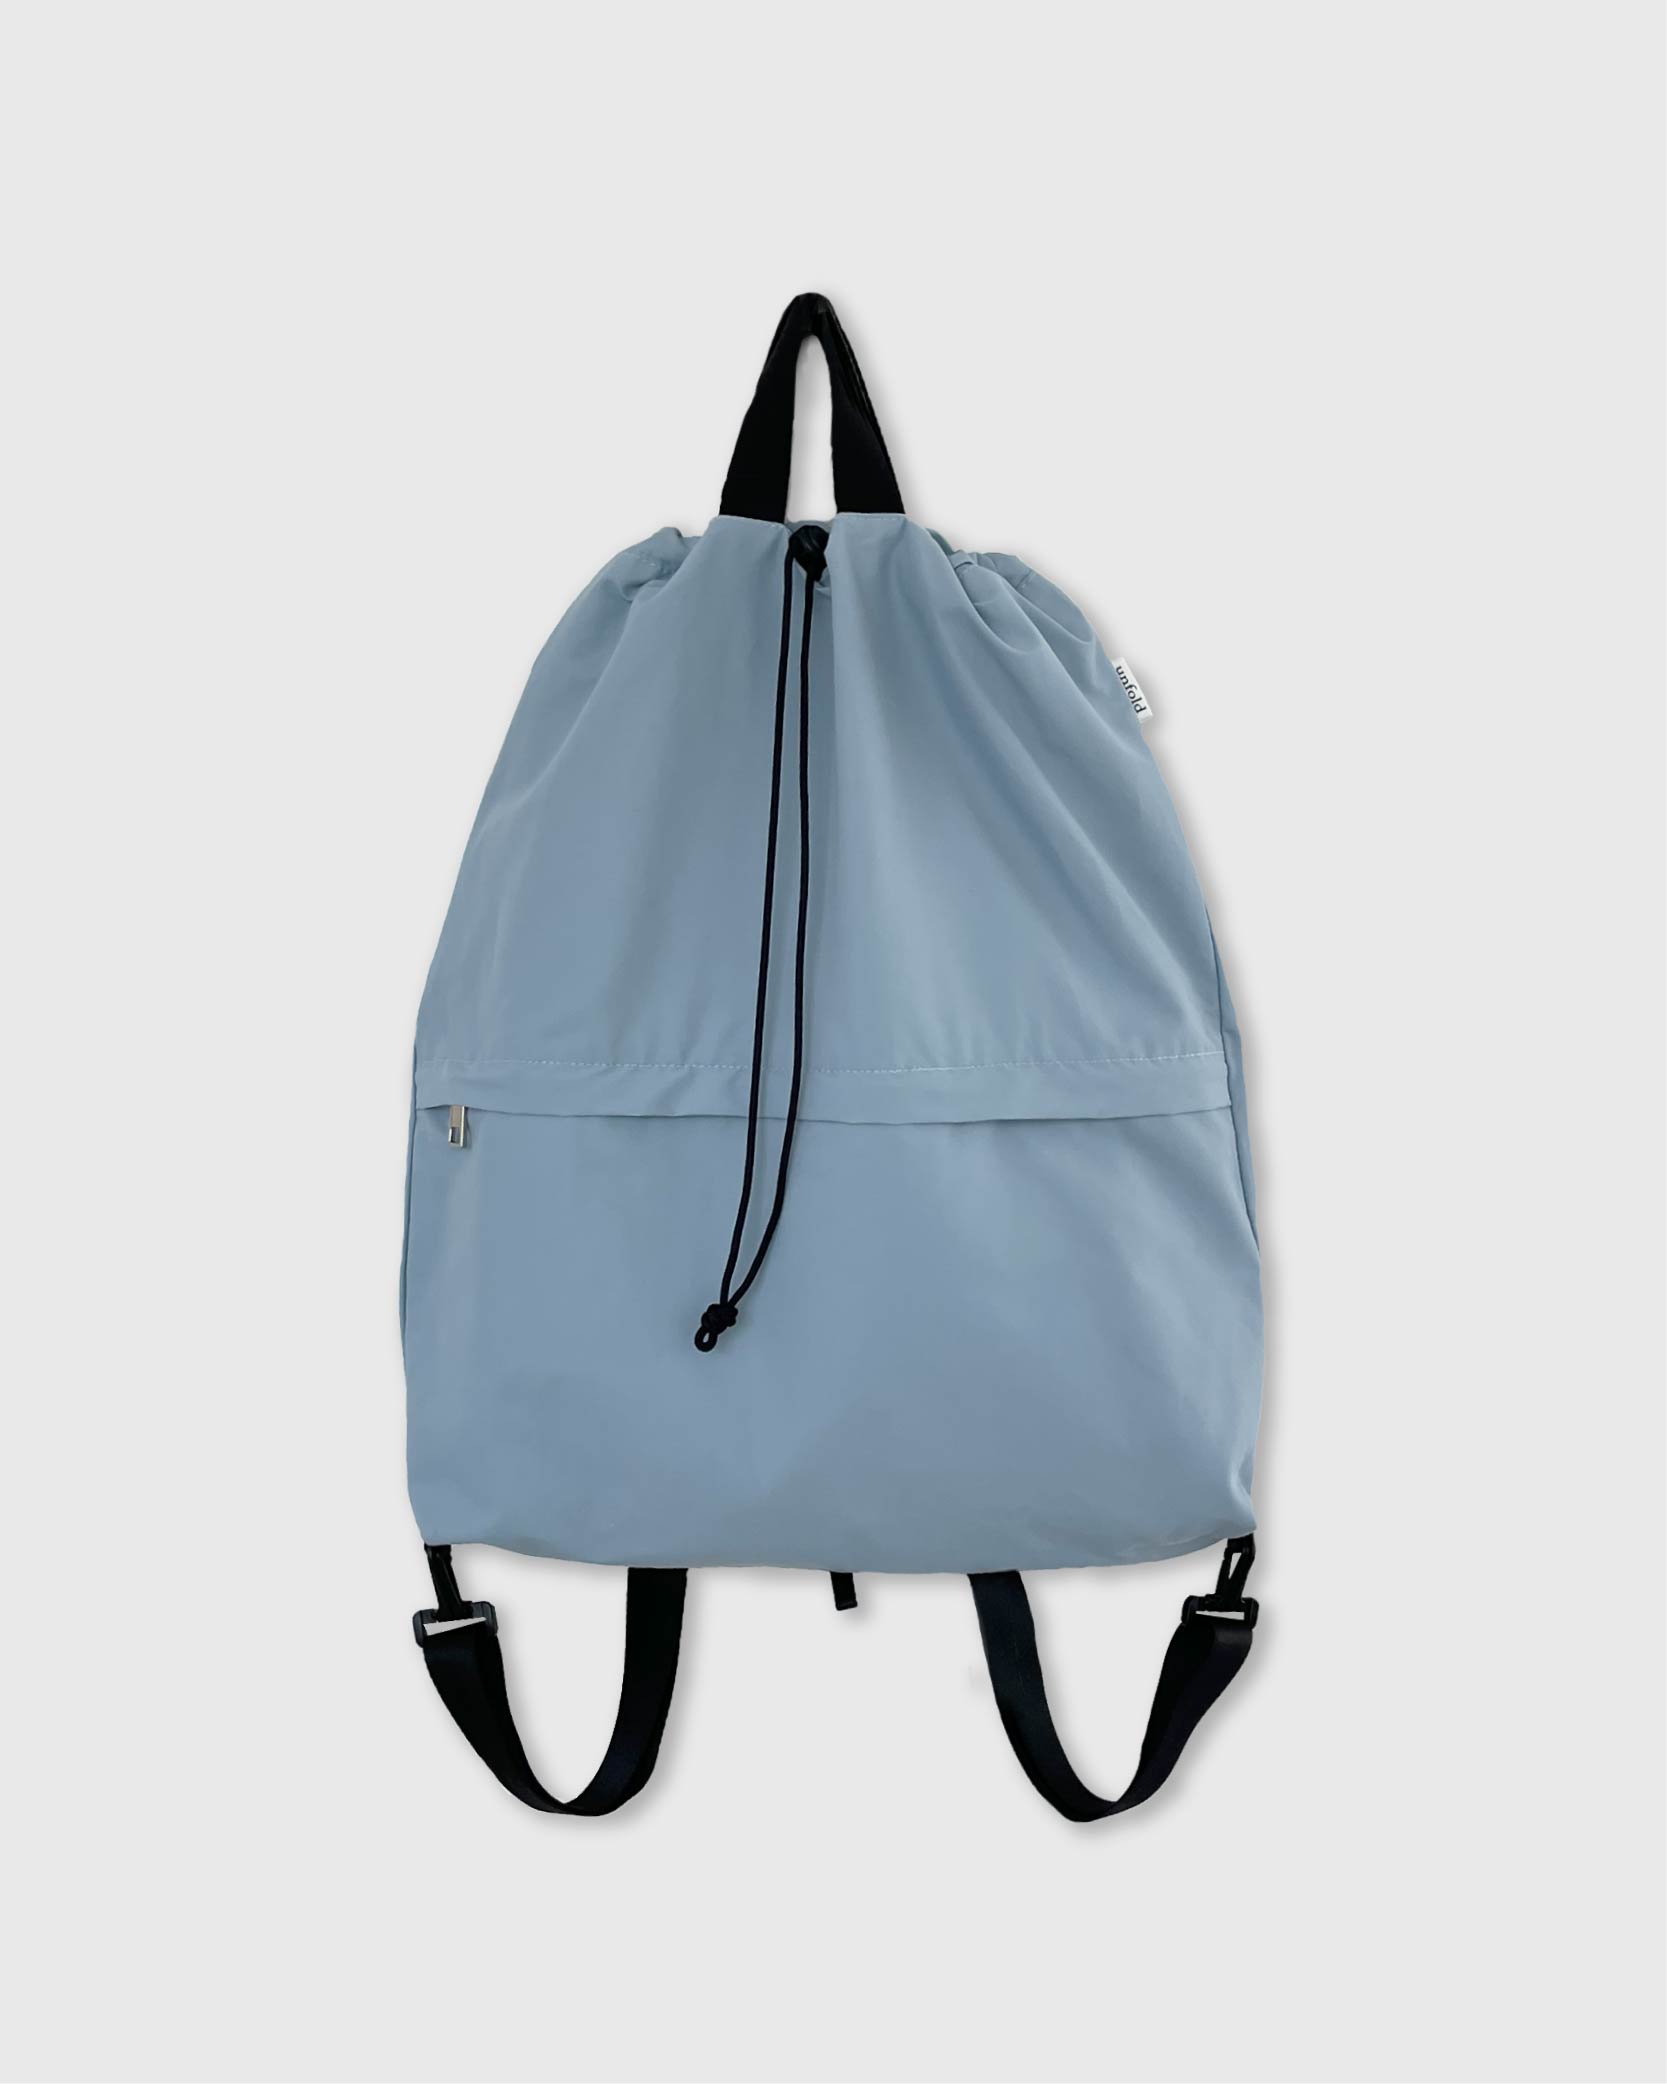 언폴드,unfold,에코백,파우치,천가방,친환경가방,String backpack (skyblue)